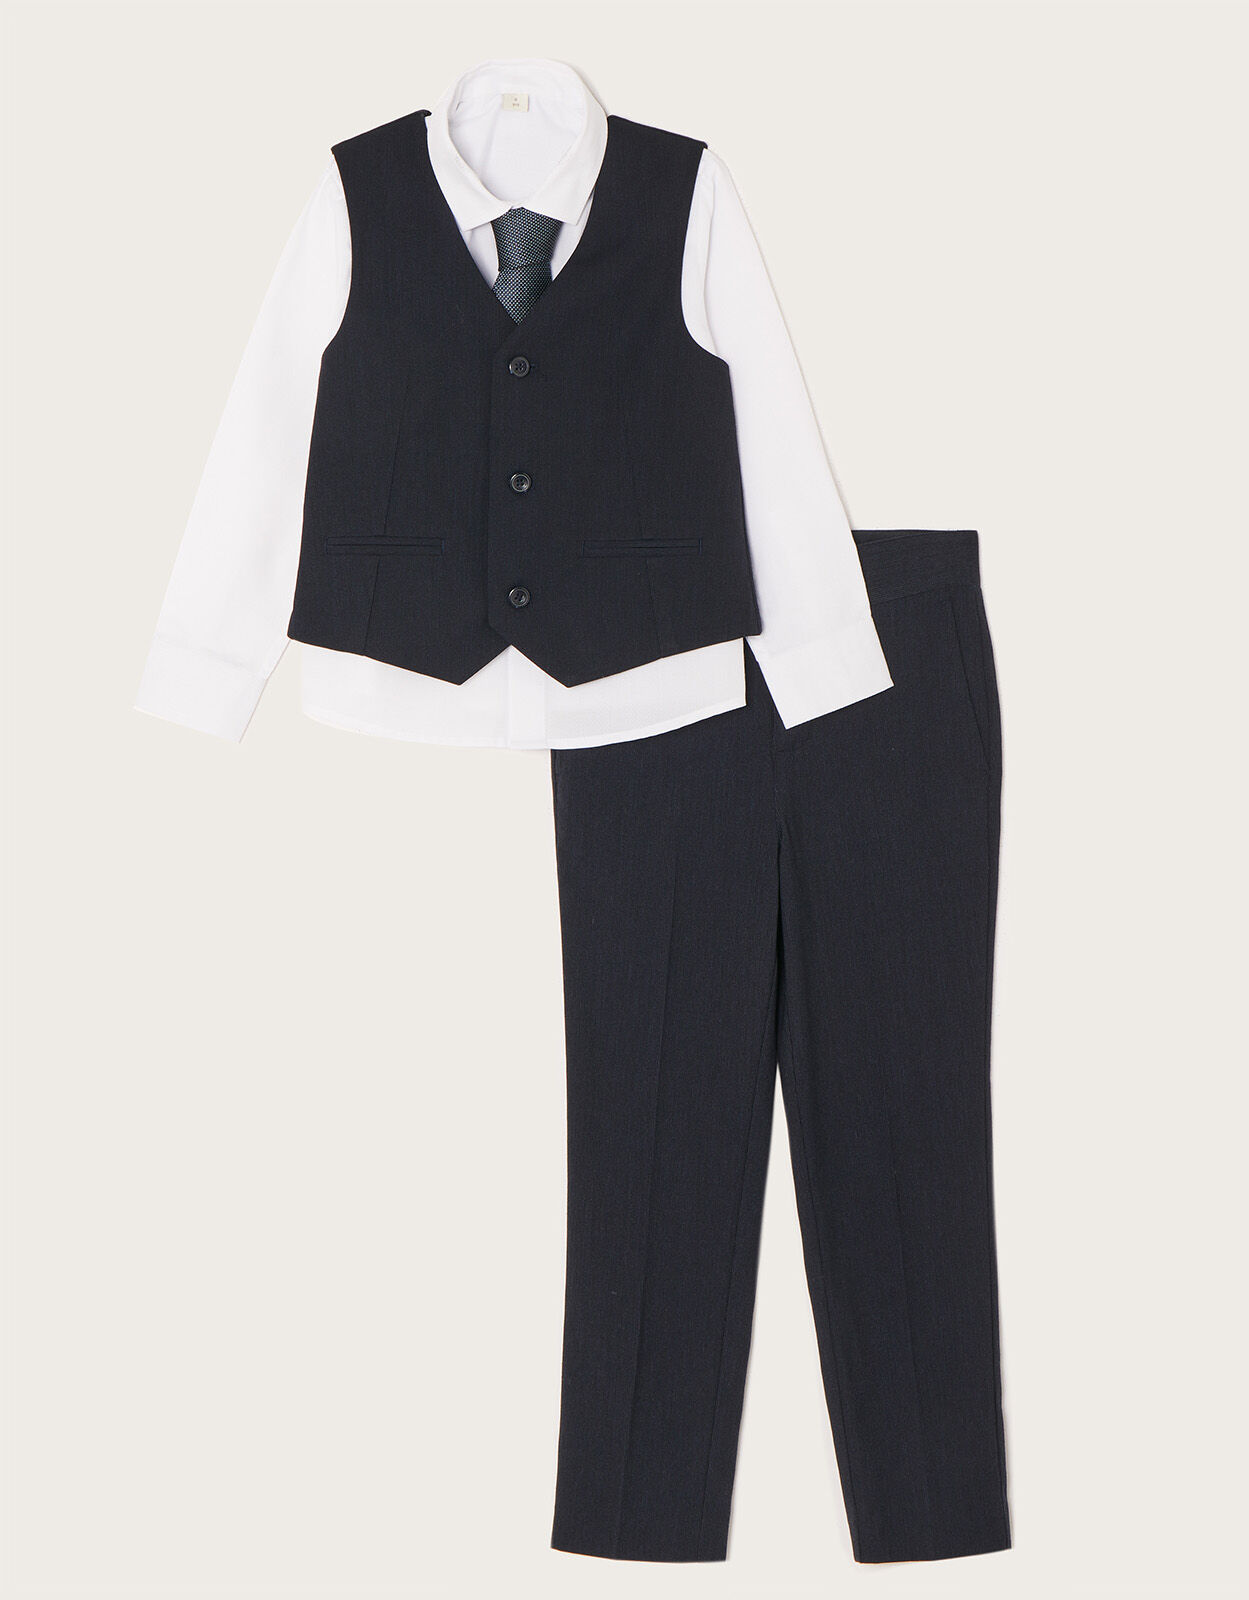 Perry Ellis Boy's 4 Piece Suit with White Shirt - U Shaped Vest